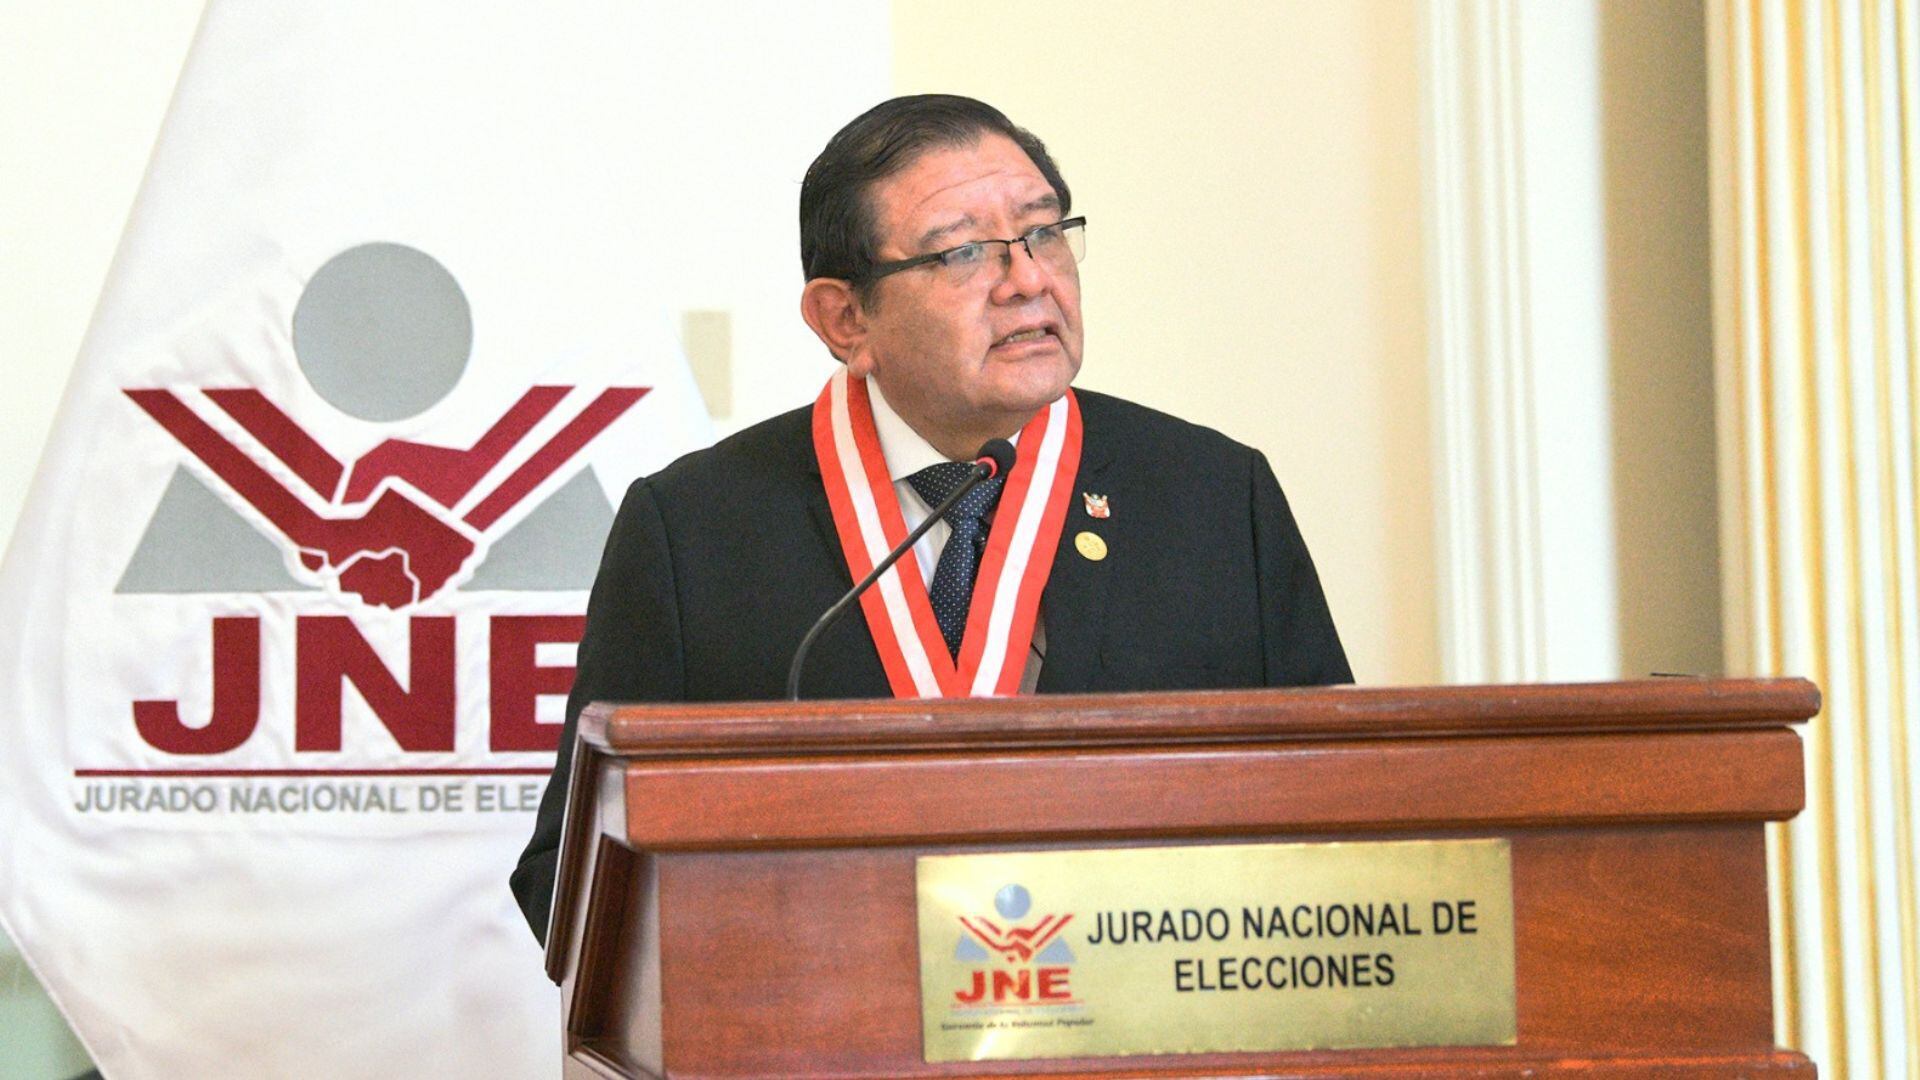 El titular de la entidad electoral es Jorge Luis Salas Arenas. | JNE